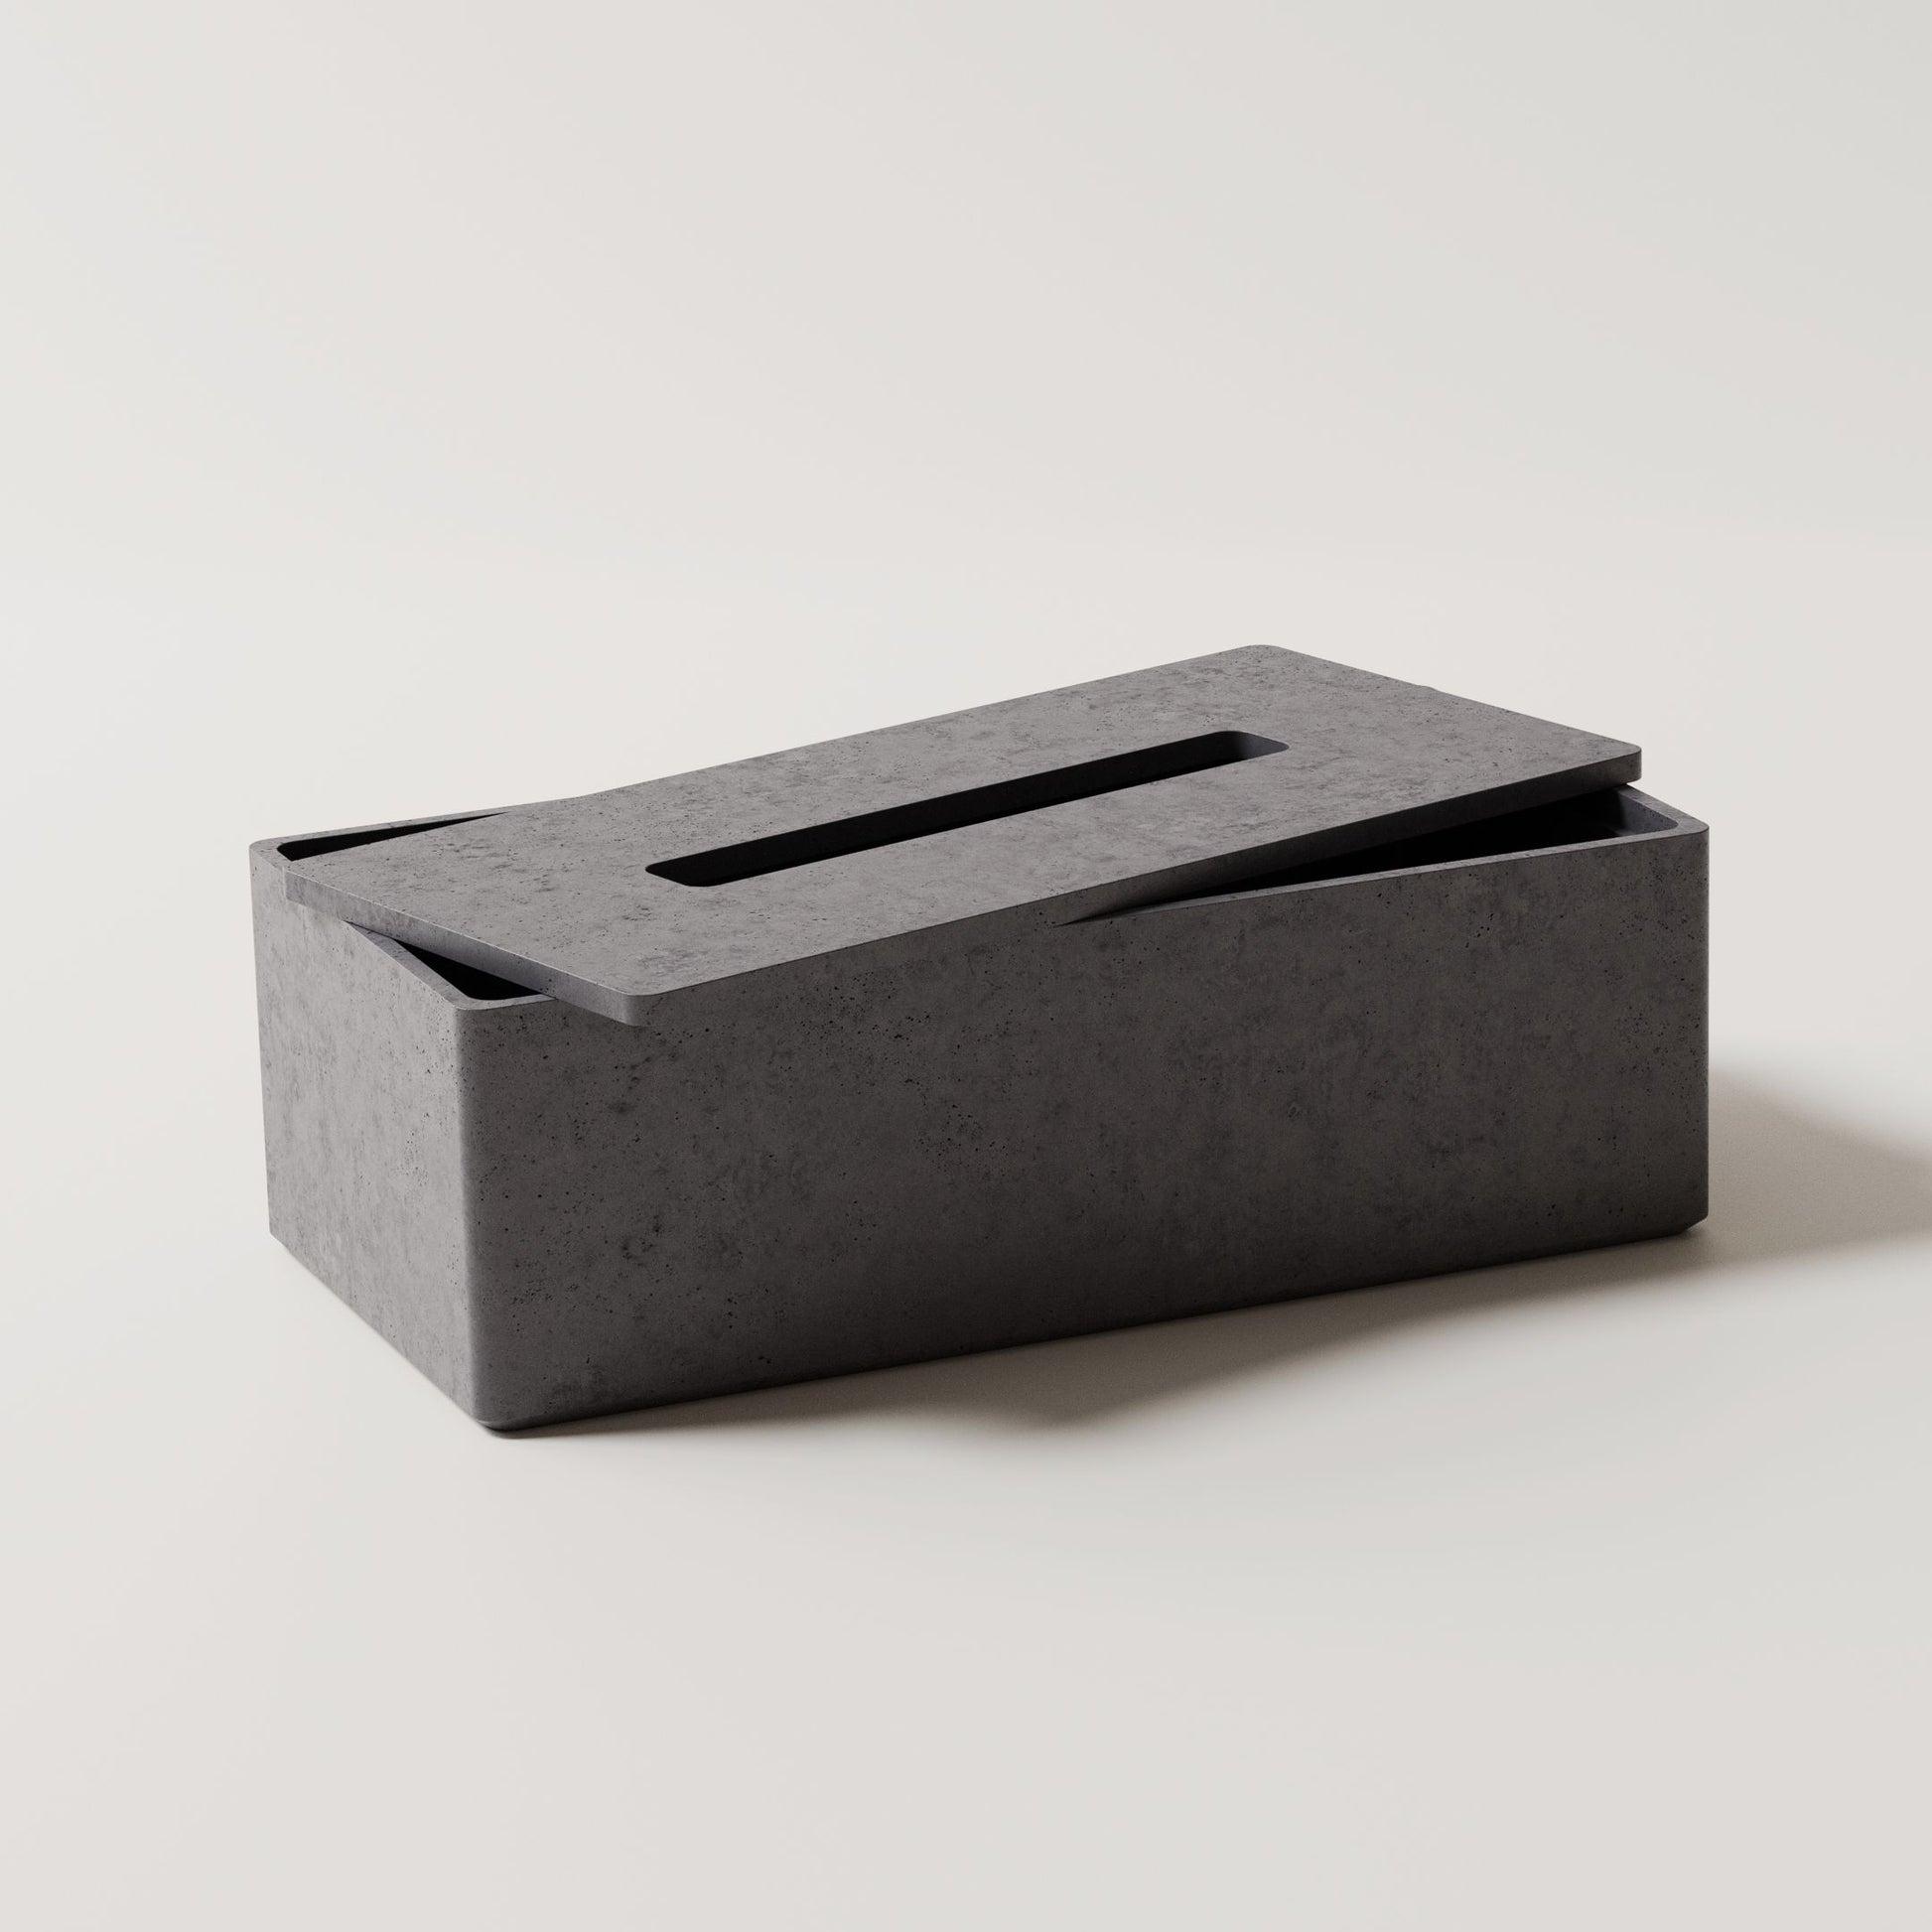 Originálny box na vreckovky Mooneton vyrobený z vysokopevnostného betónu s otváracím vekom. Farba - Antracit